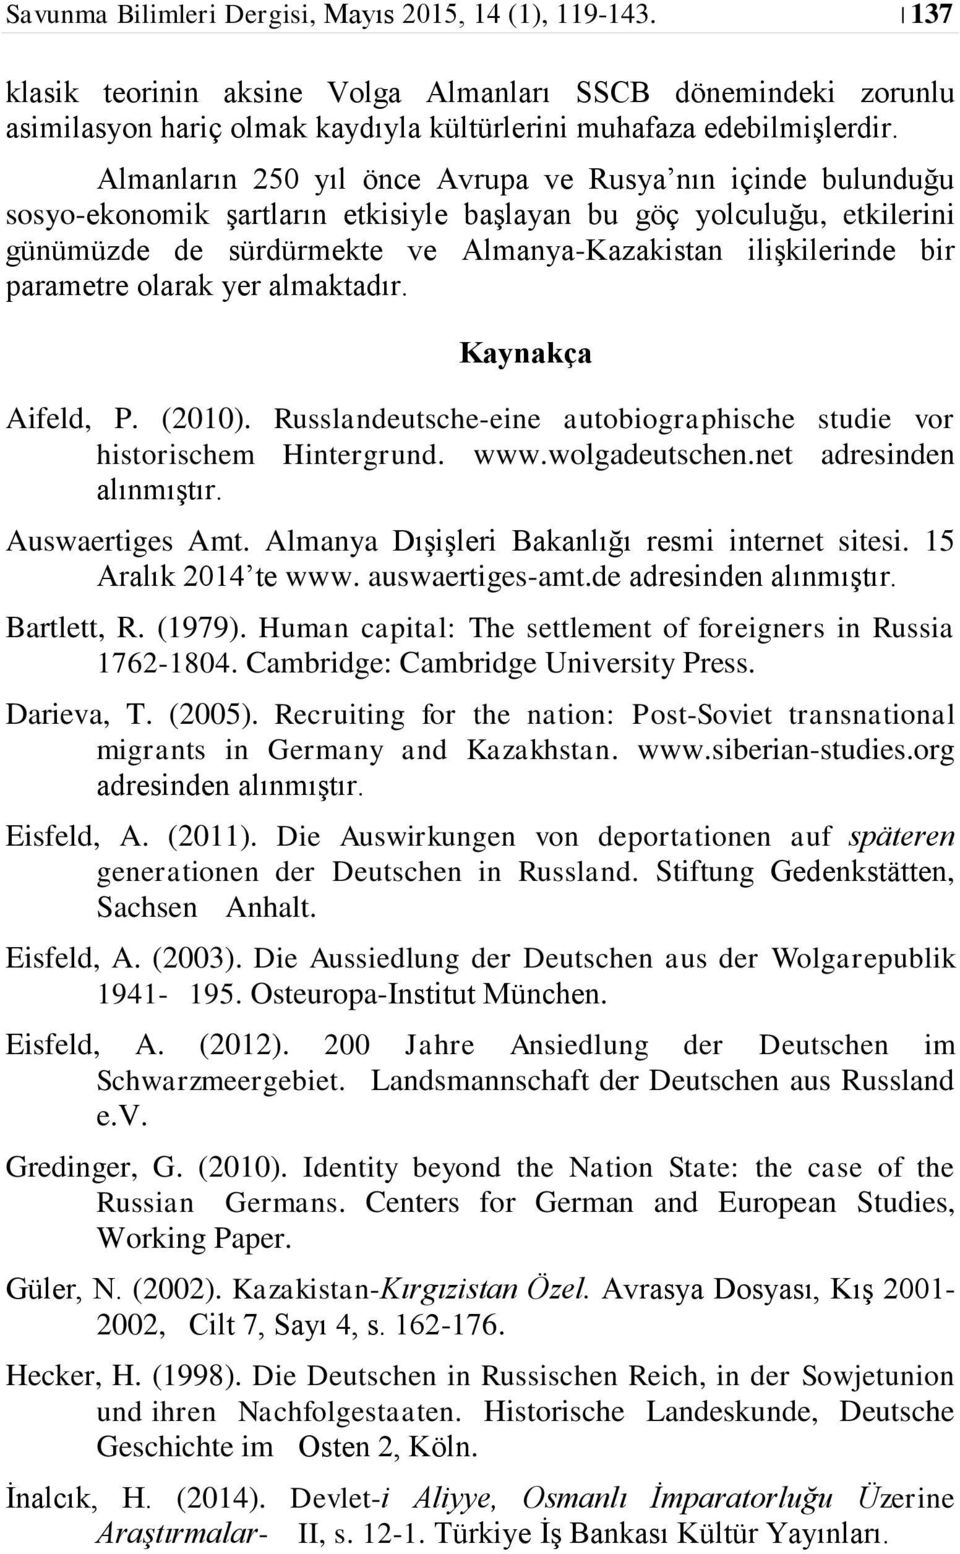 parametre olarak yer almaktadır. Kaynakça Aifeld, P. (2010). Russlandeutsche-eine autobiographische studie vor historischem Hintergrund. www.wolgadeutschen.net adresinden alınmıştır. Auswaertiges Amt.